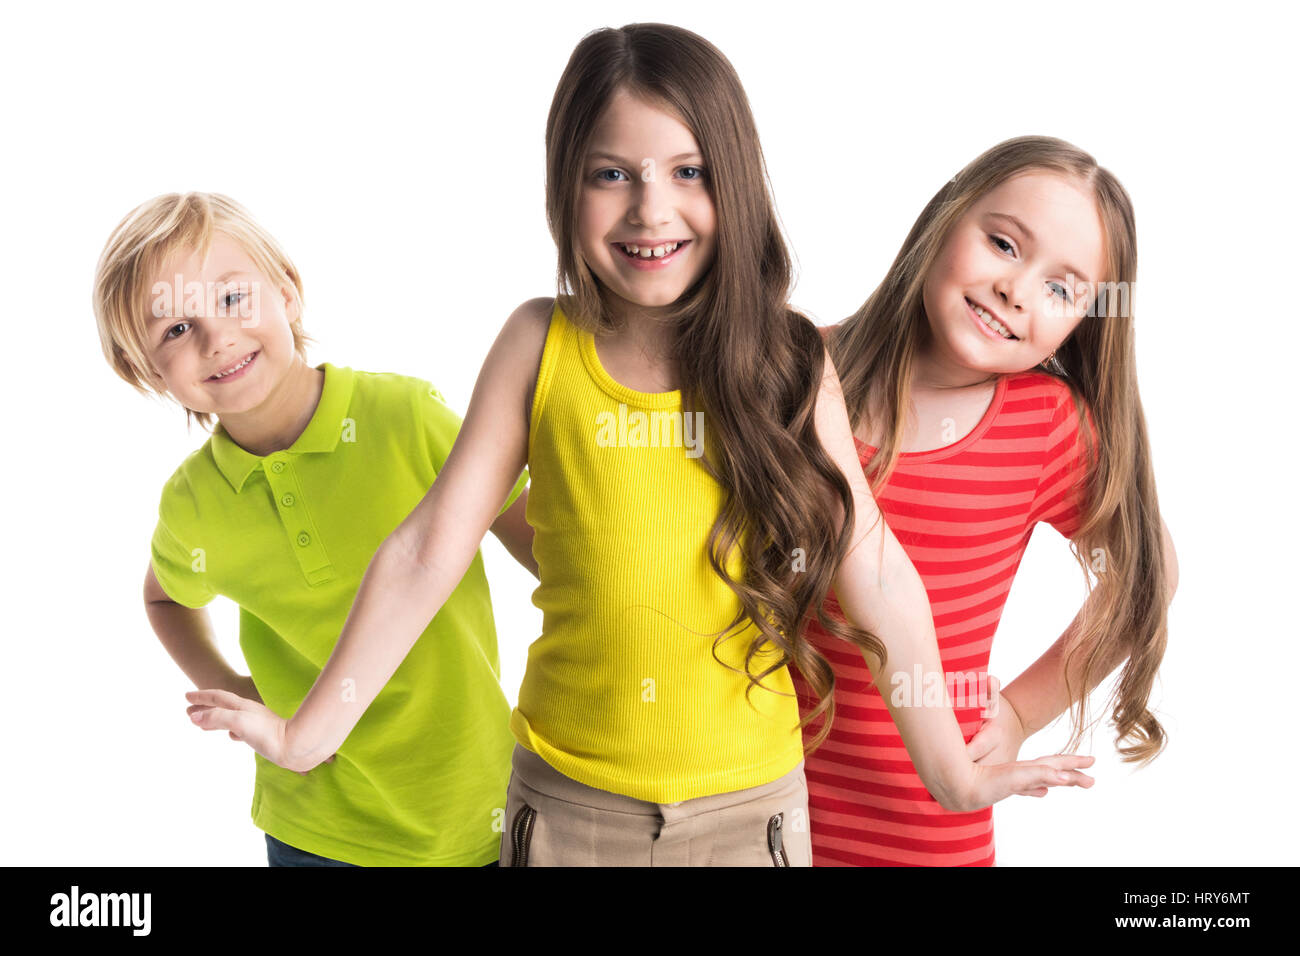 Glücklich lächelnd drei Kinder in bunten Kleidern isoliert auf weißem Hintergrund Stockfoto